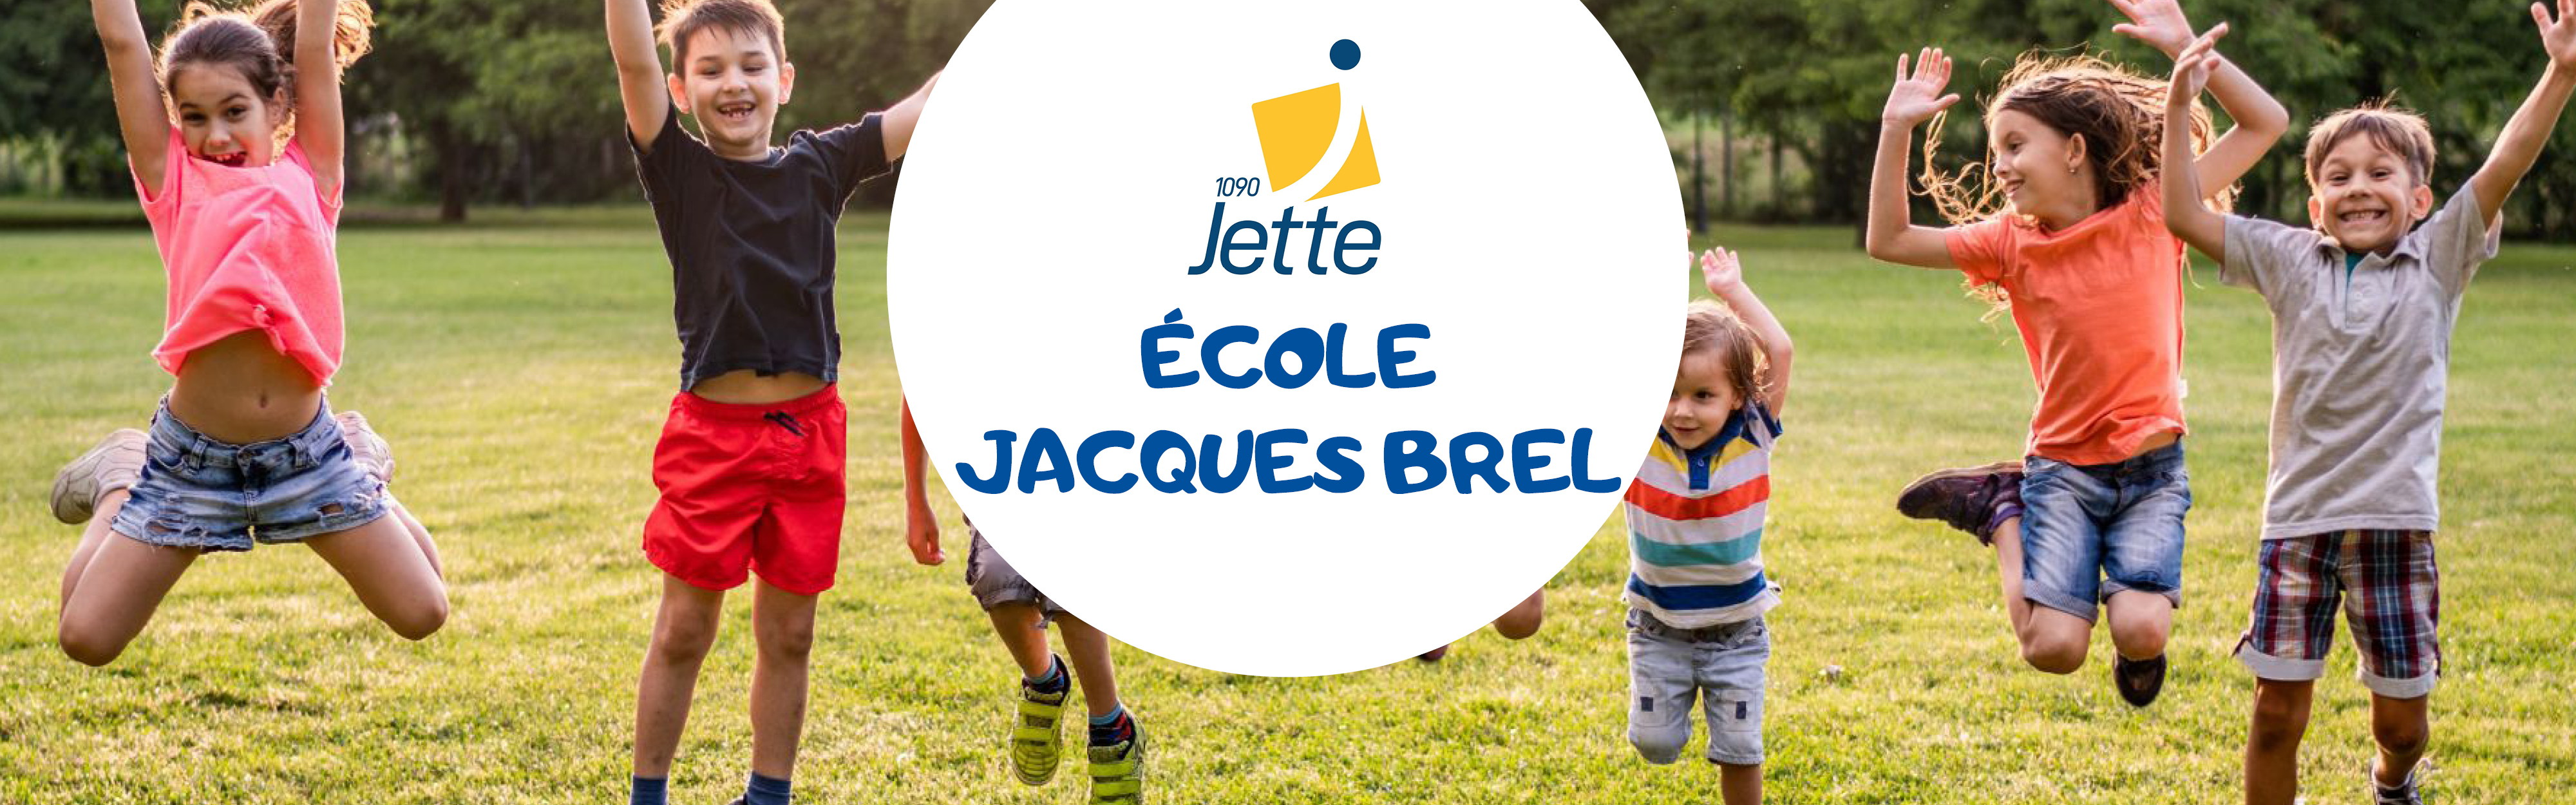 Jette - Ecole Jacques Brel